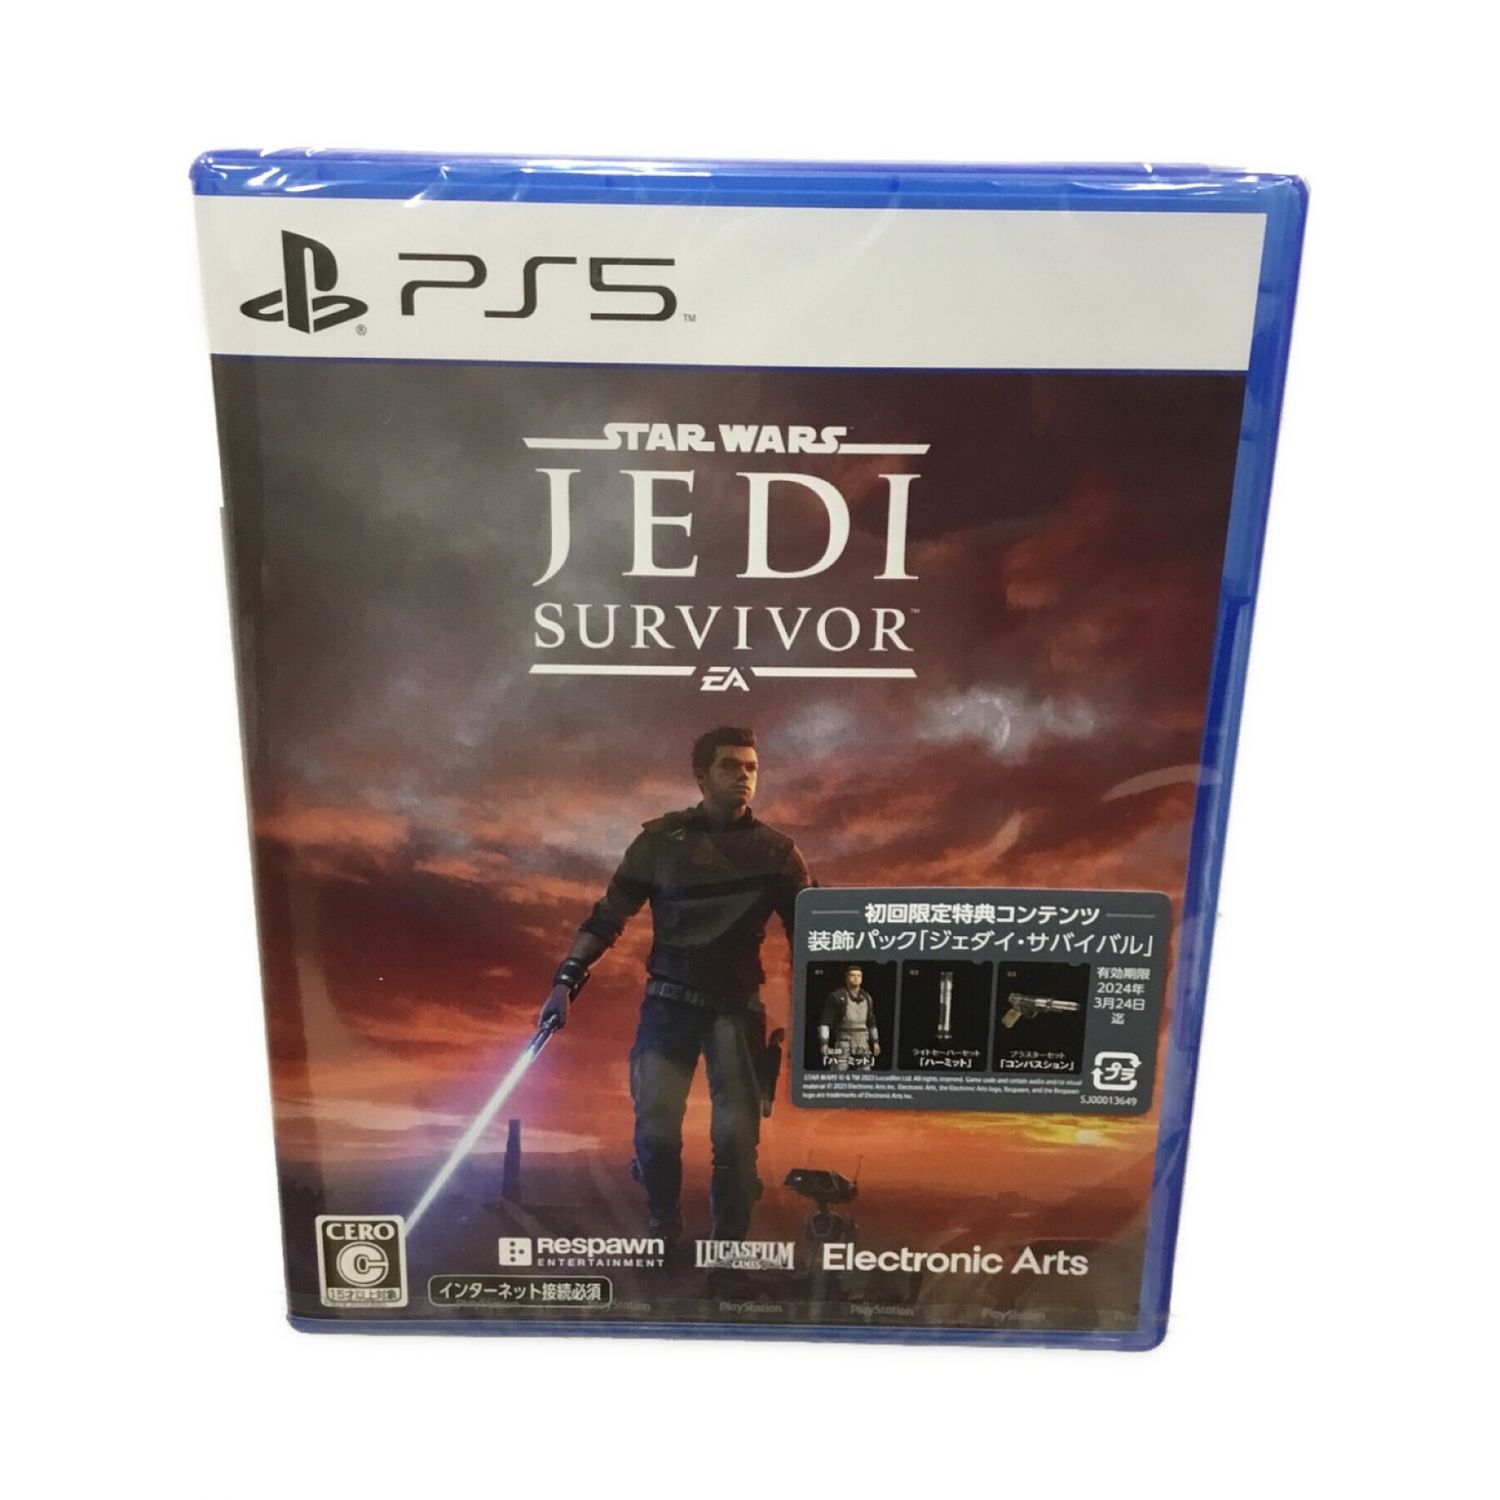 PS5 Star Wars ジェダイ:サバイバー 初回特典 プロダクトコード - ゲーム